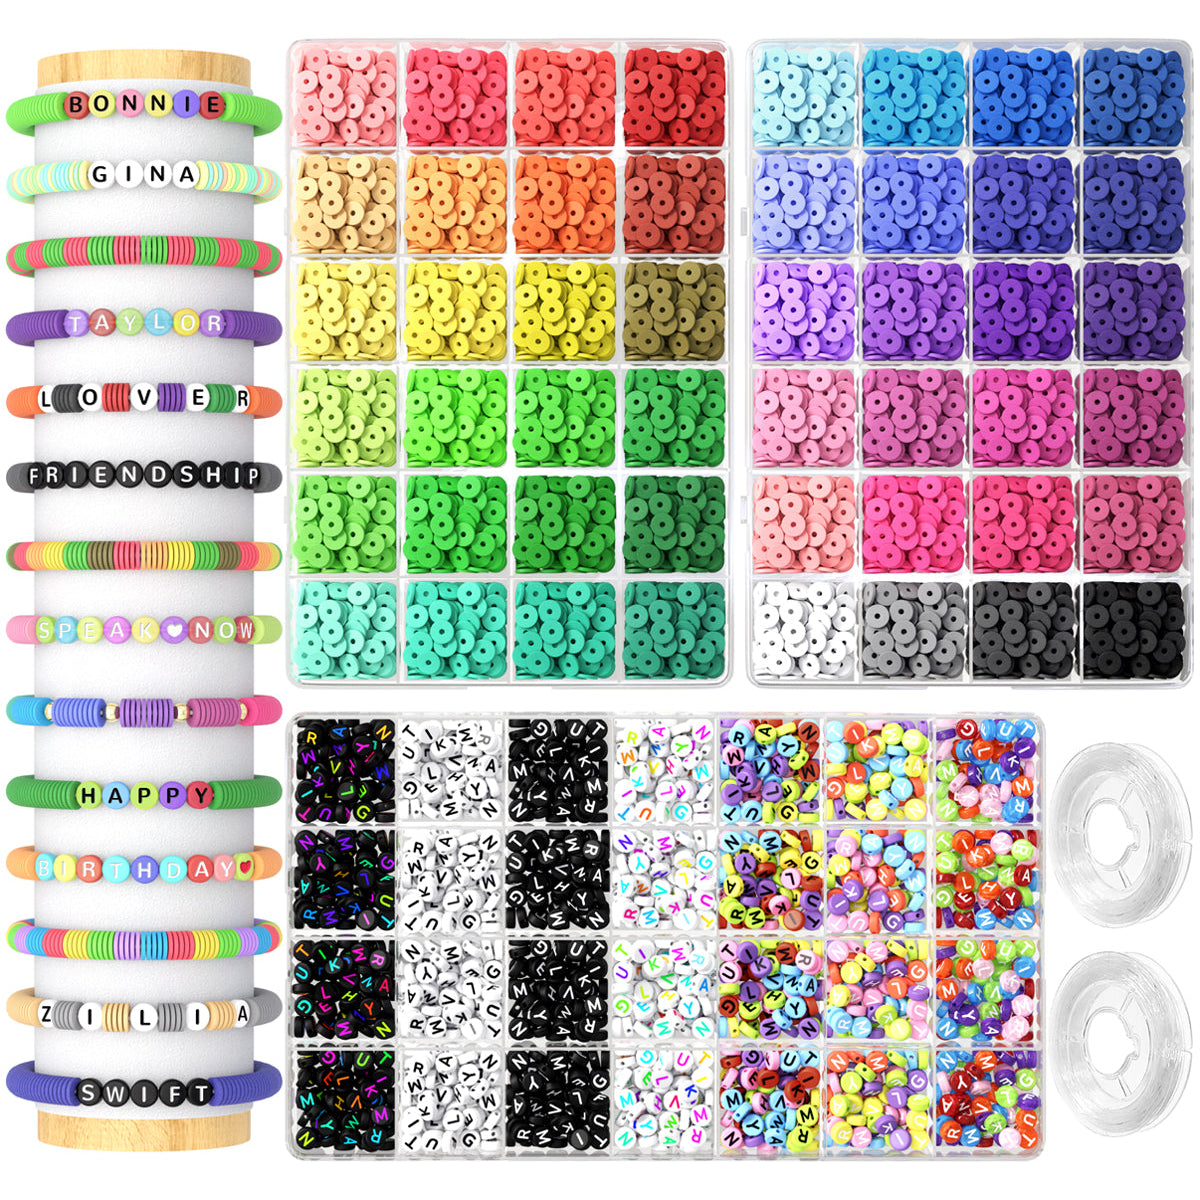 7 Cases Letter beads For Friendship Bracelets Kits